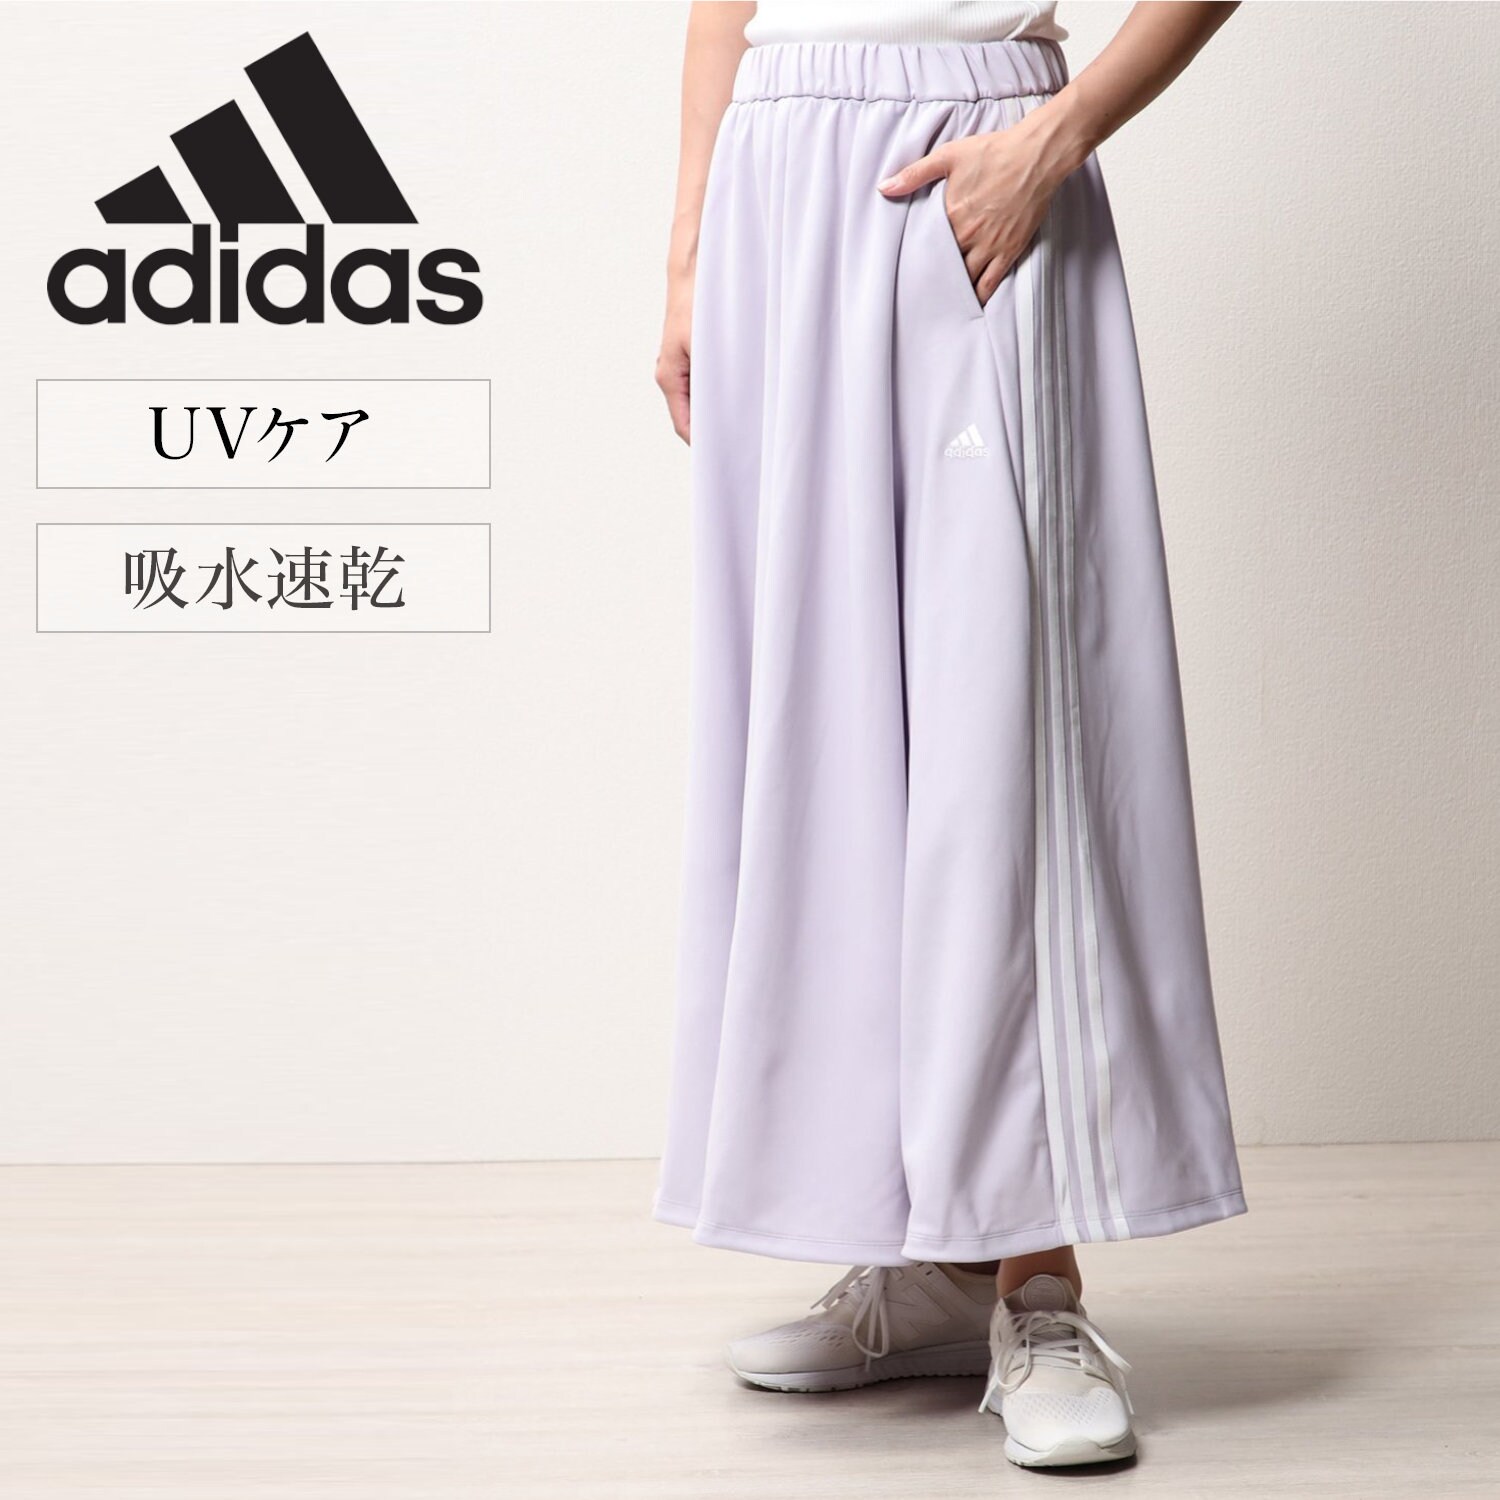 【アディダス/adidas】W MH 3Sスカート画像